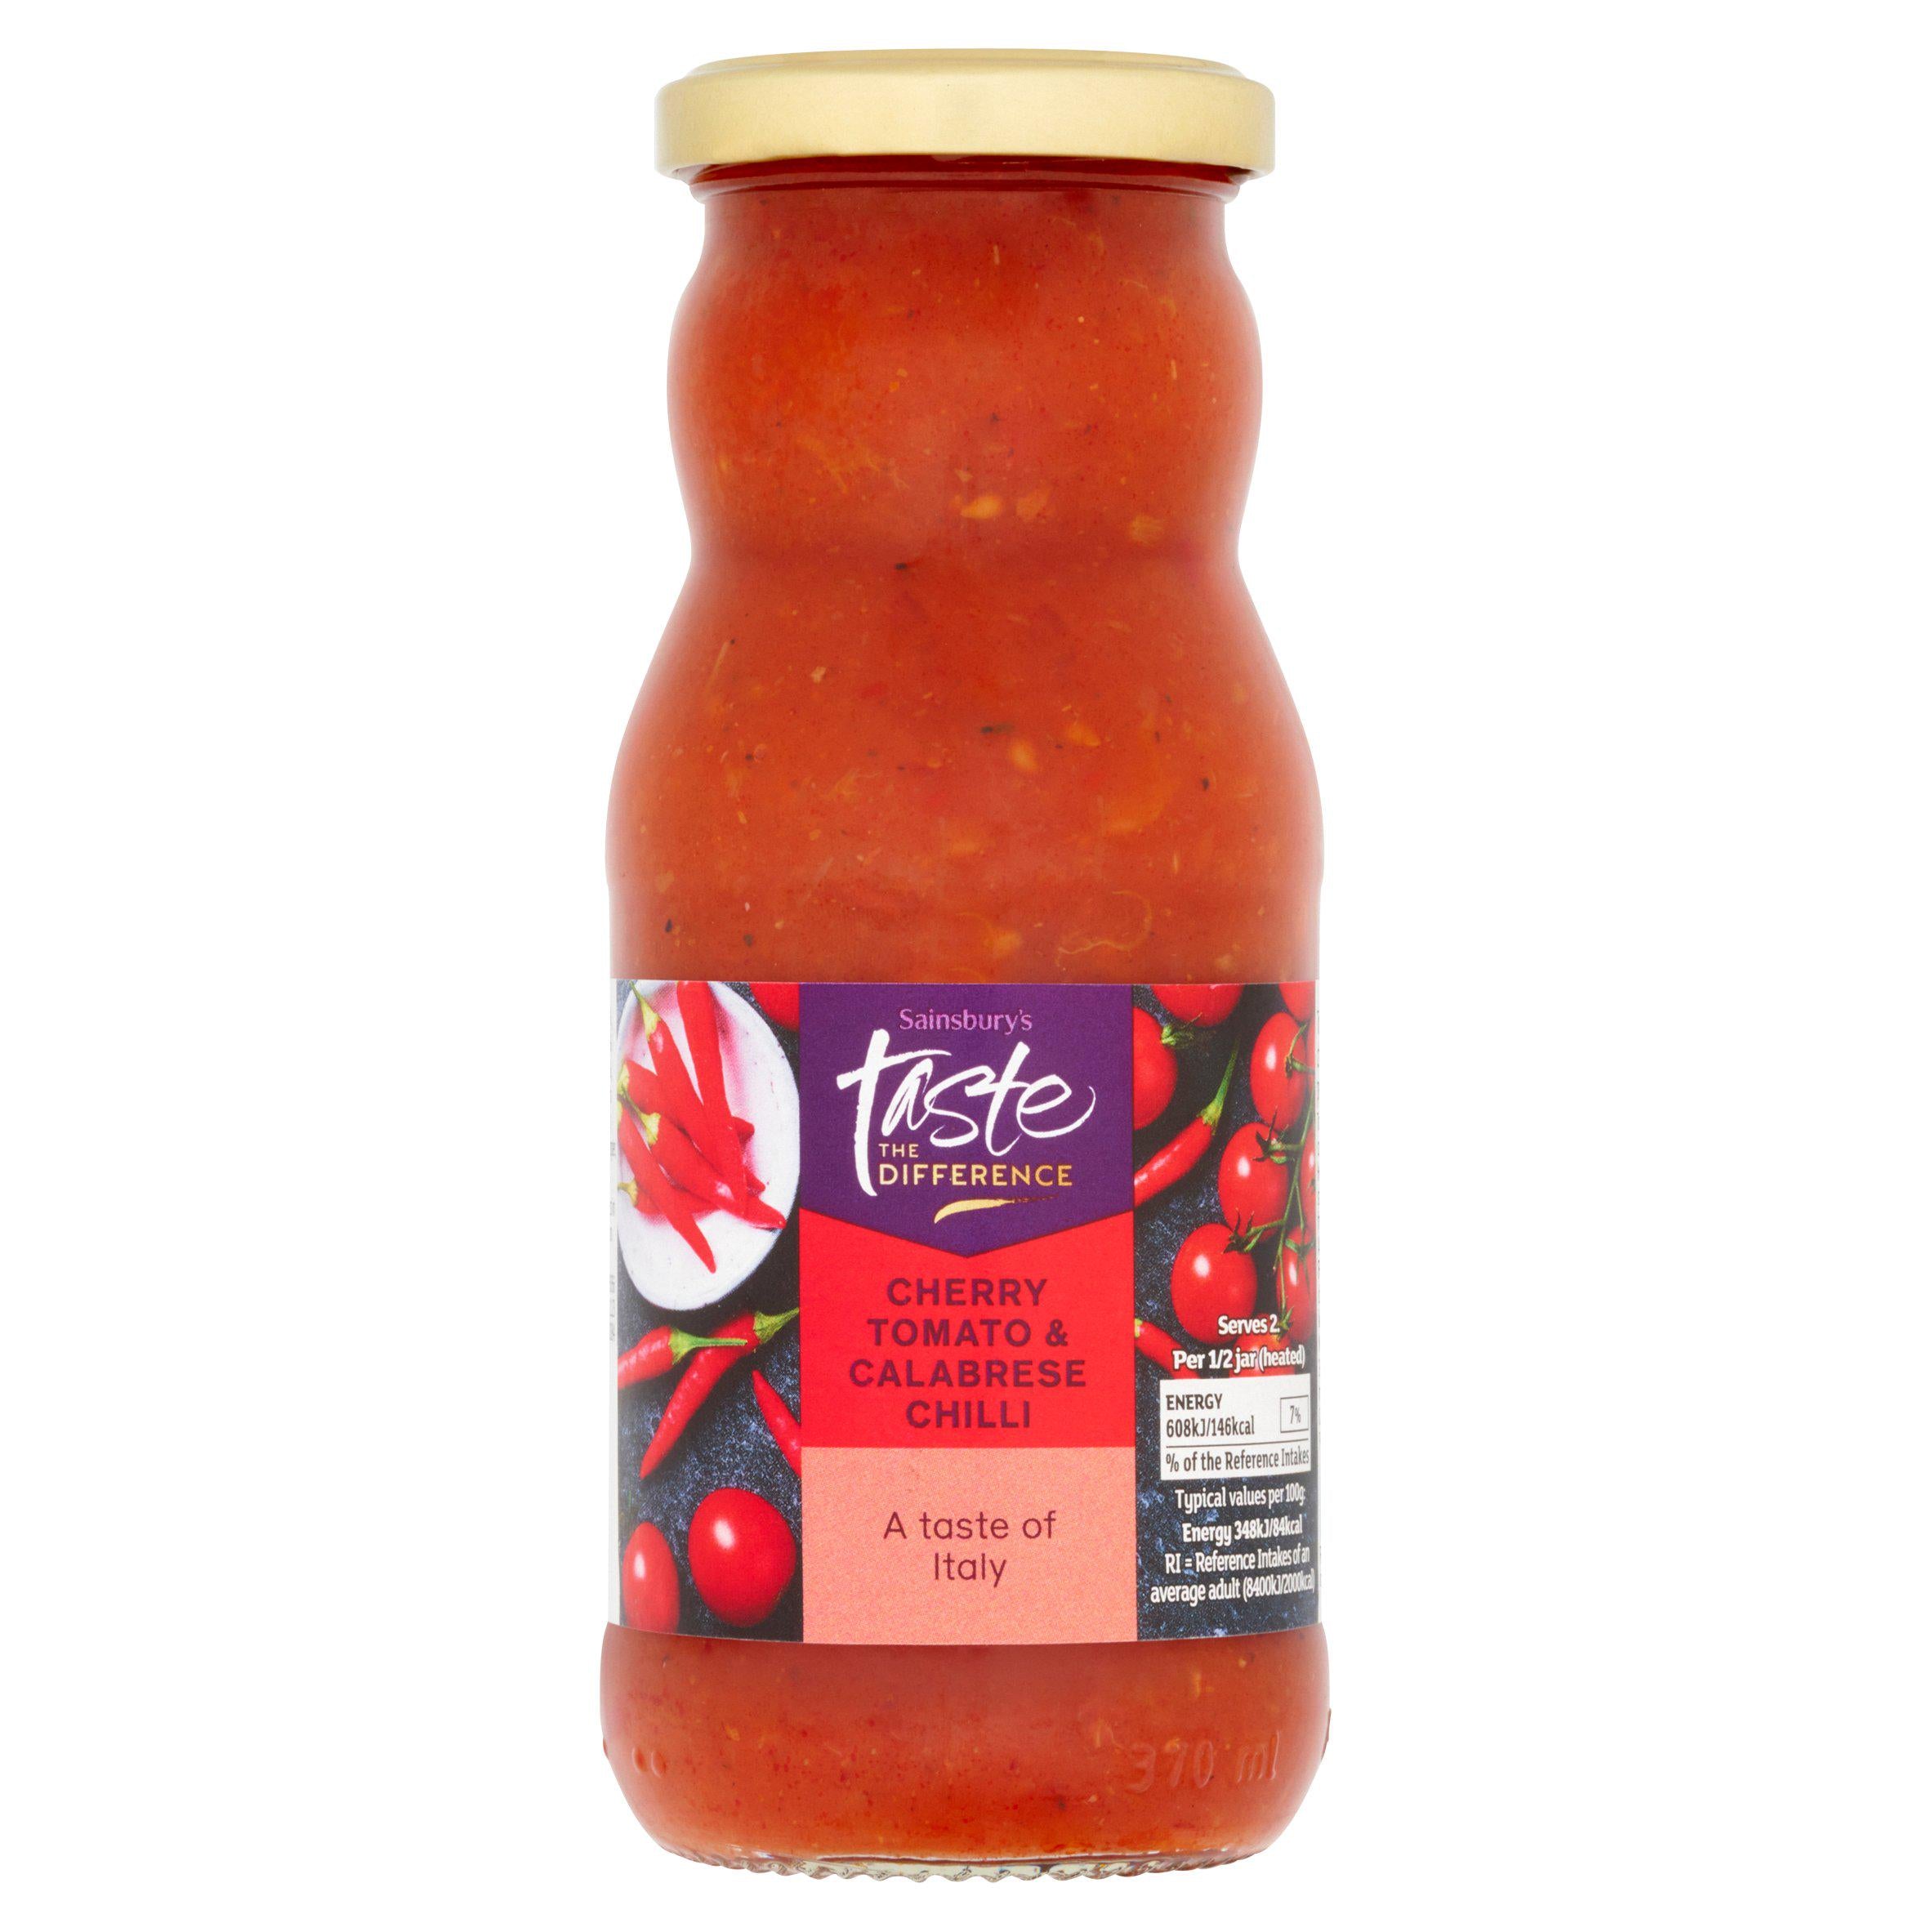 Sainsbury's Cherry Tomato & Calabrese Chilli Pasta Sauce, Taste the Difference 350g Italian Sainsburys   